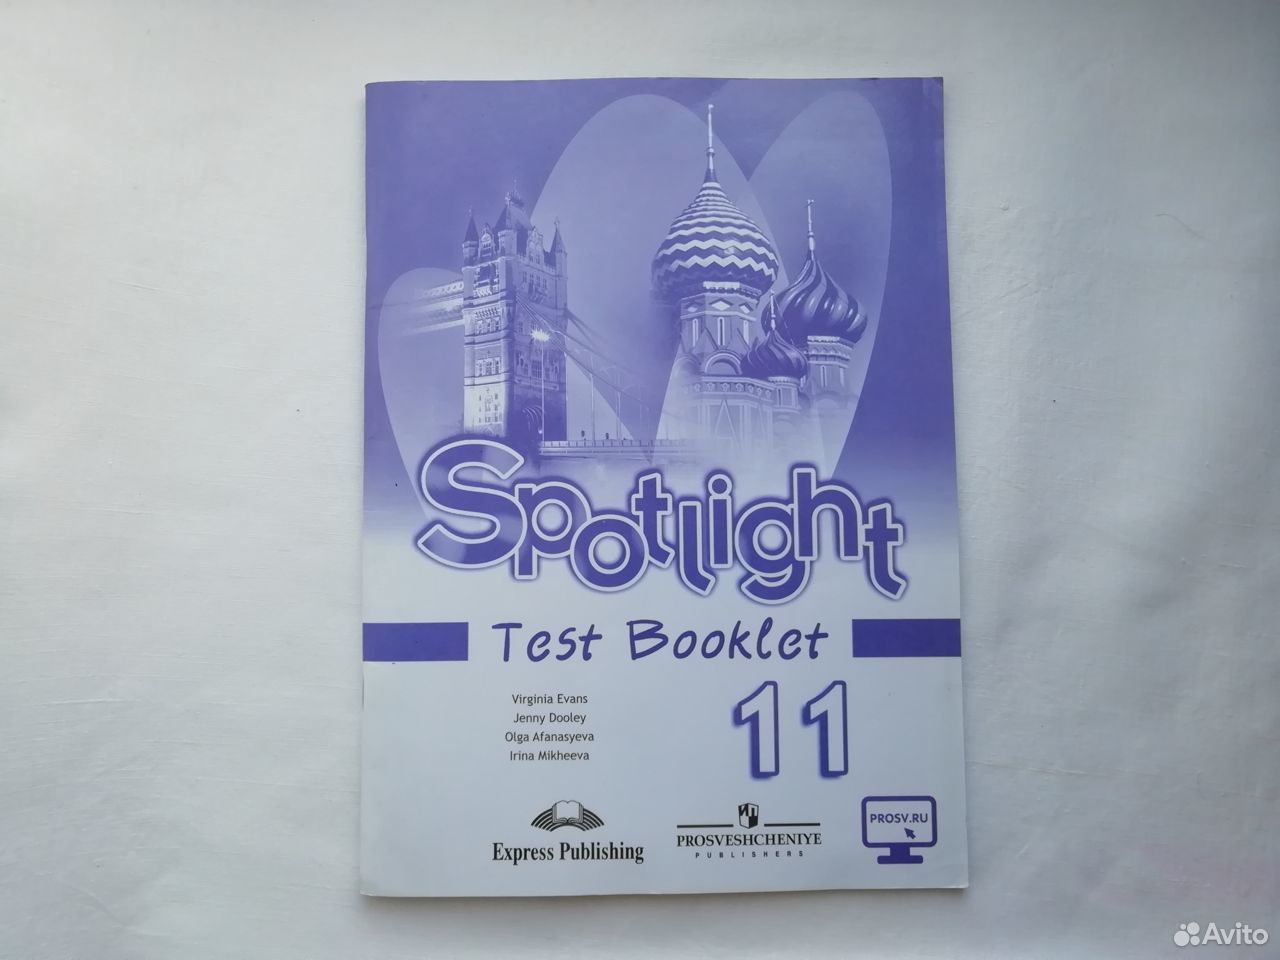 Английский язык 6 класс spotlight test booklet. Test booklet 11 класс Spotlight. Тест буклет 11 класс Spotlight. Спотлайт 8 тест буклет. Тест буклет спотлайт 11 класс ответы.